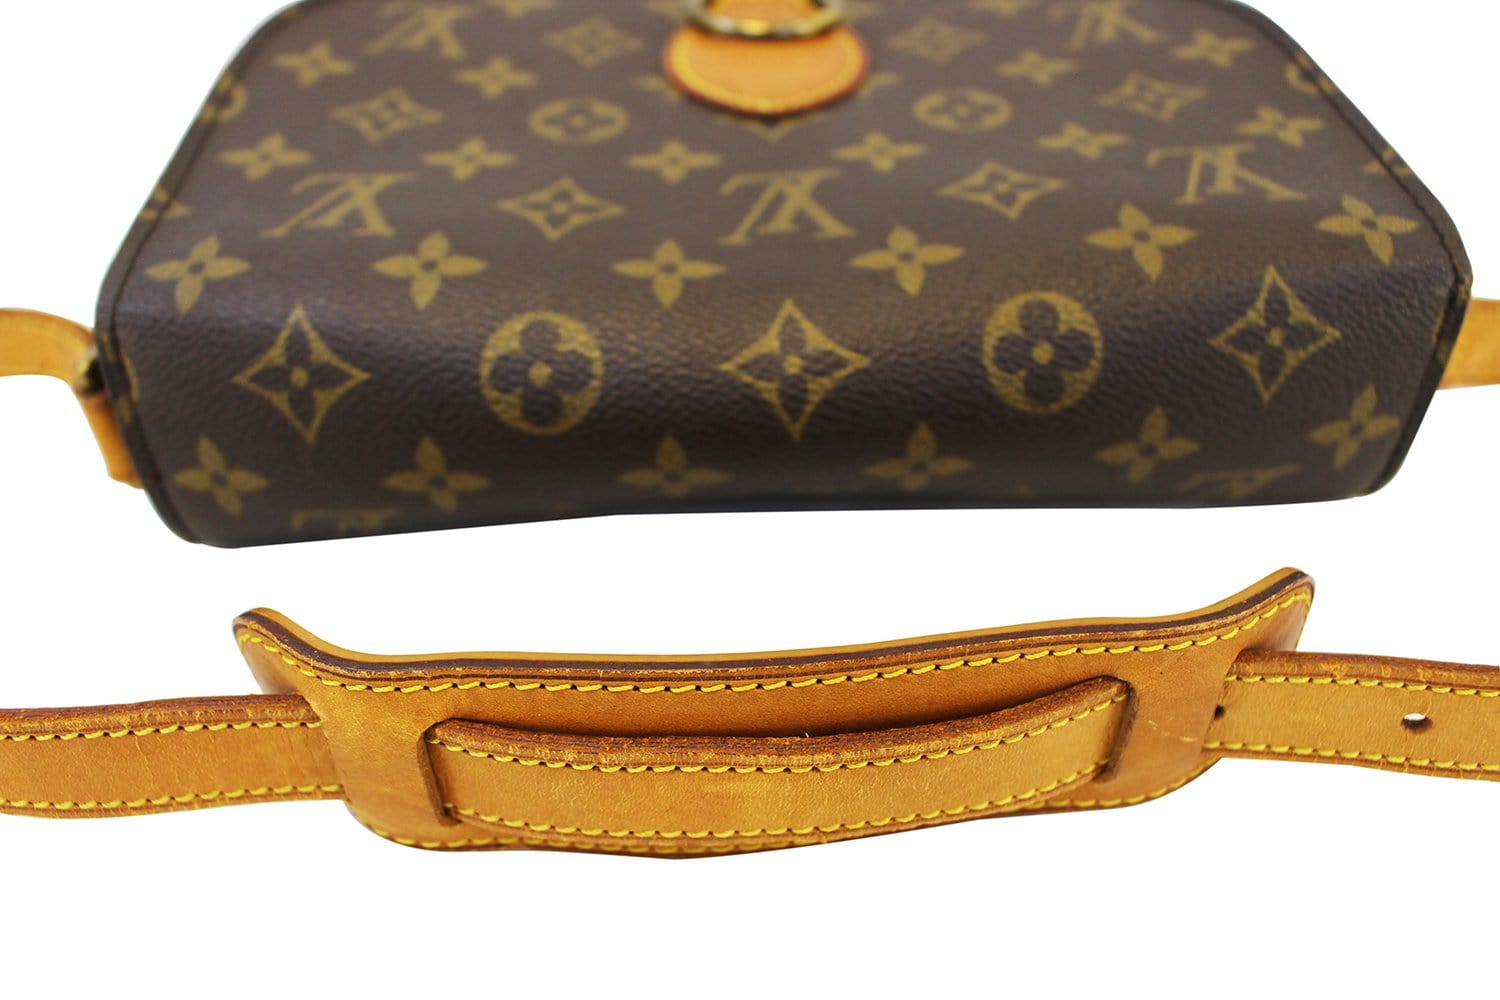 Louis Vuitton St. Cloud GM - Brown Shoulder Bags, Handbags - LOU31000